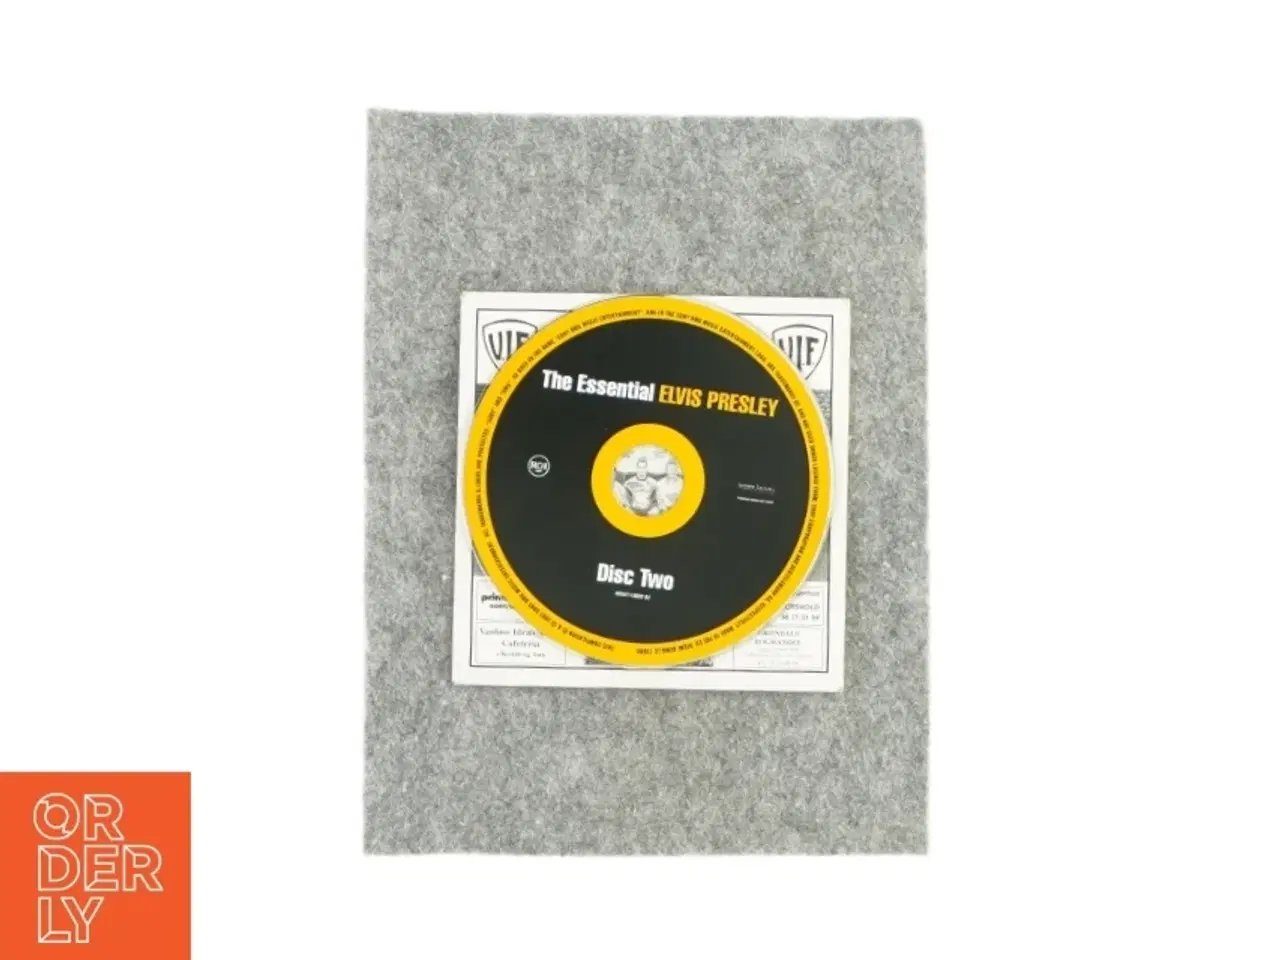 Billede 3 - Vanløse idrætsforening mod nye mål indeholder the essential Elvis Presley disk 2 (CD)